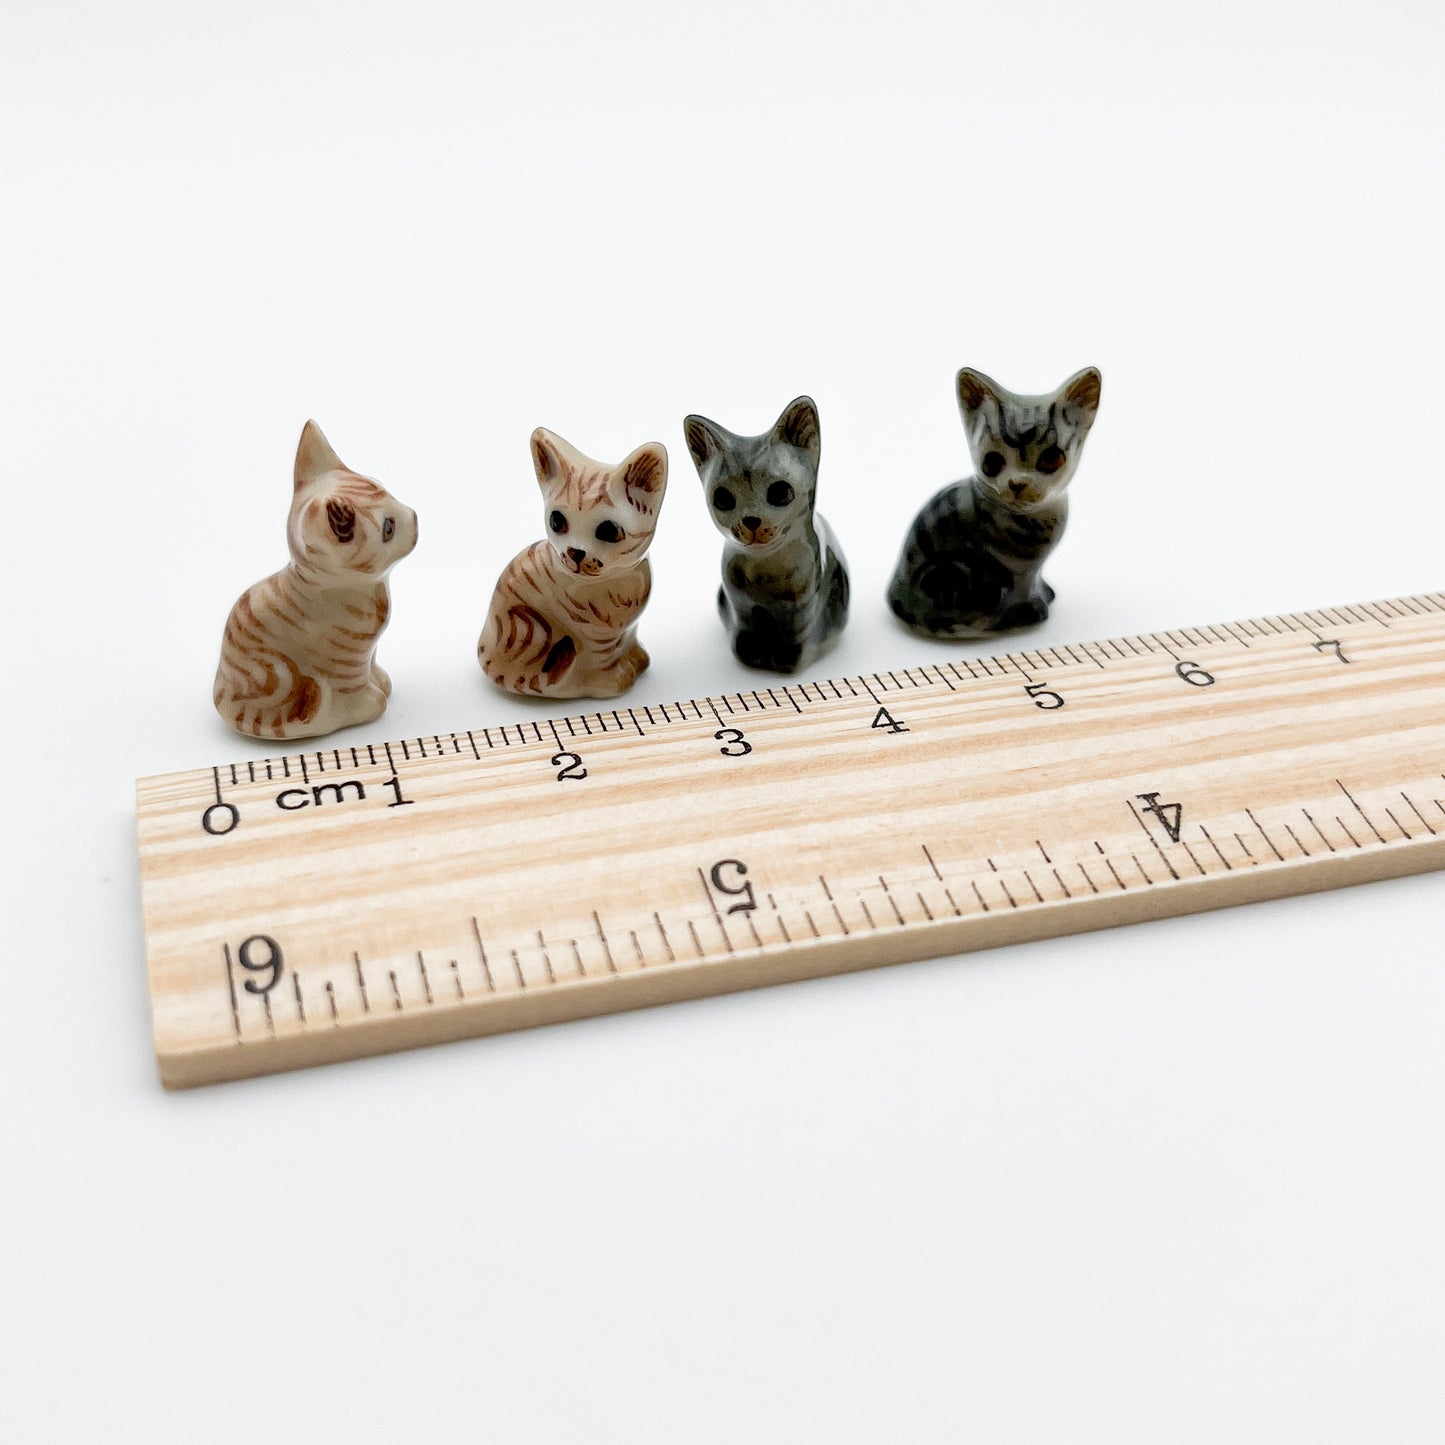 2 Tiny Kitten Figurines